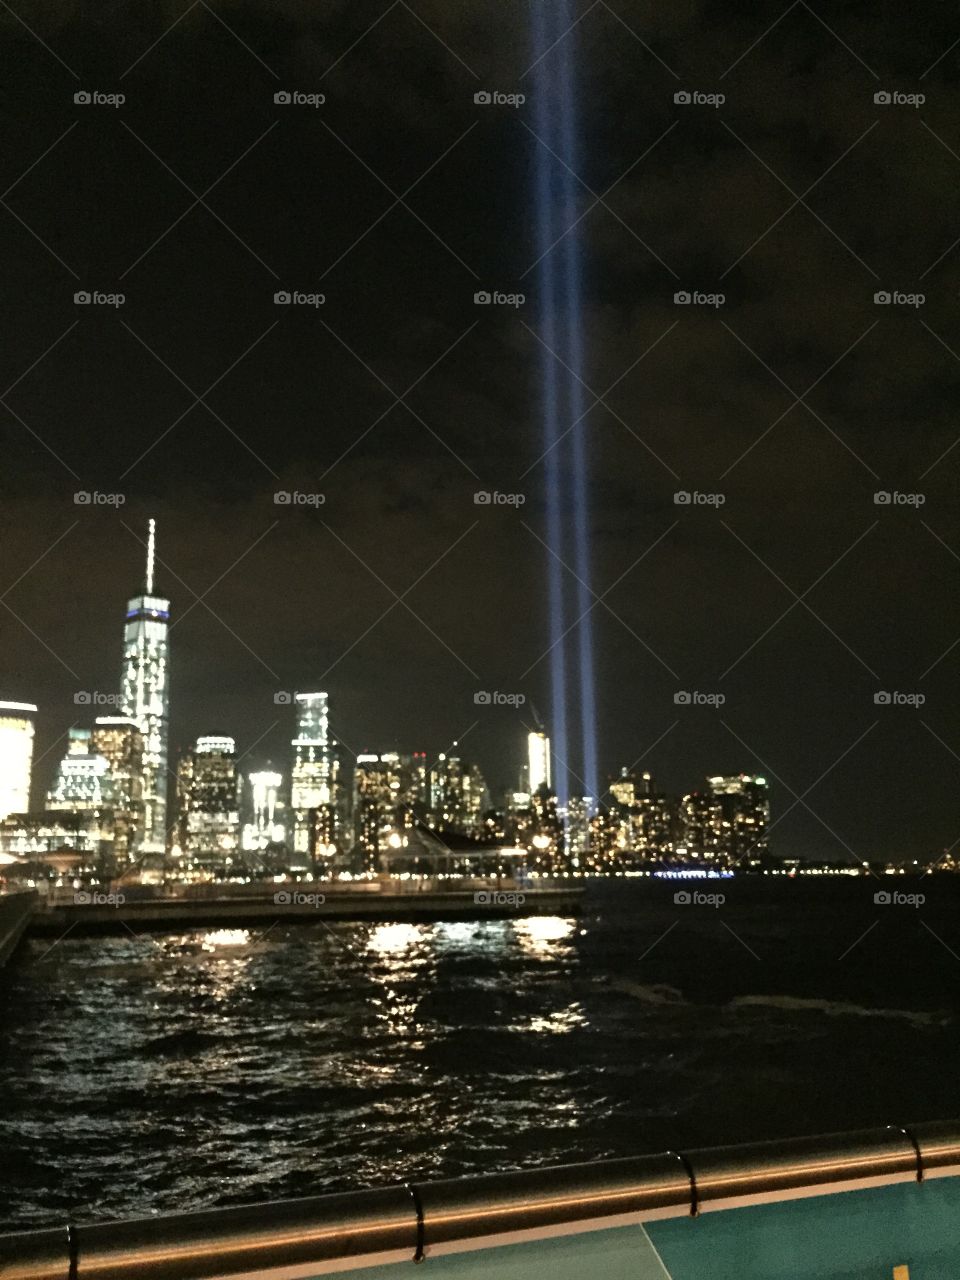 Lights. 9-11 memorial lights